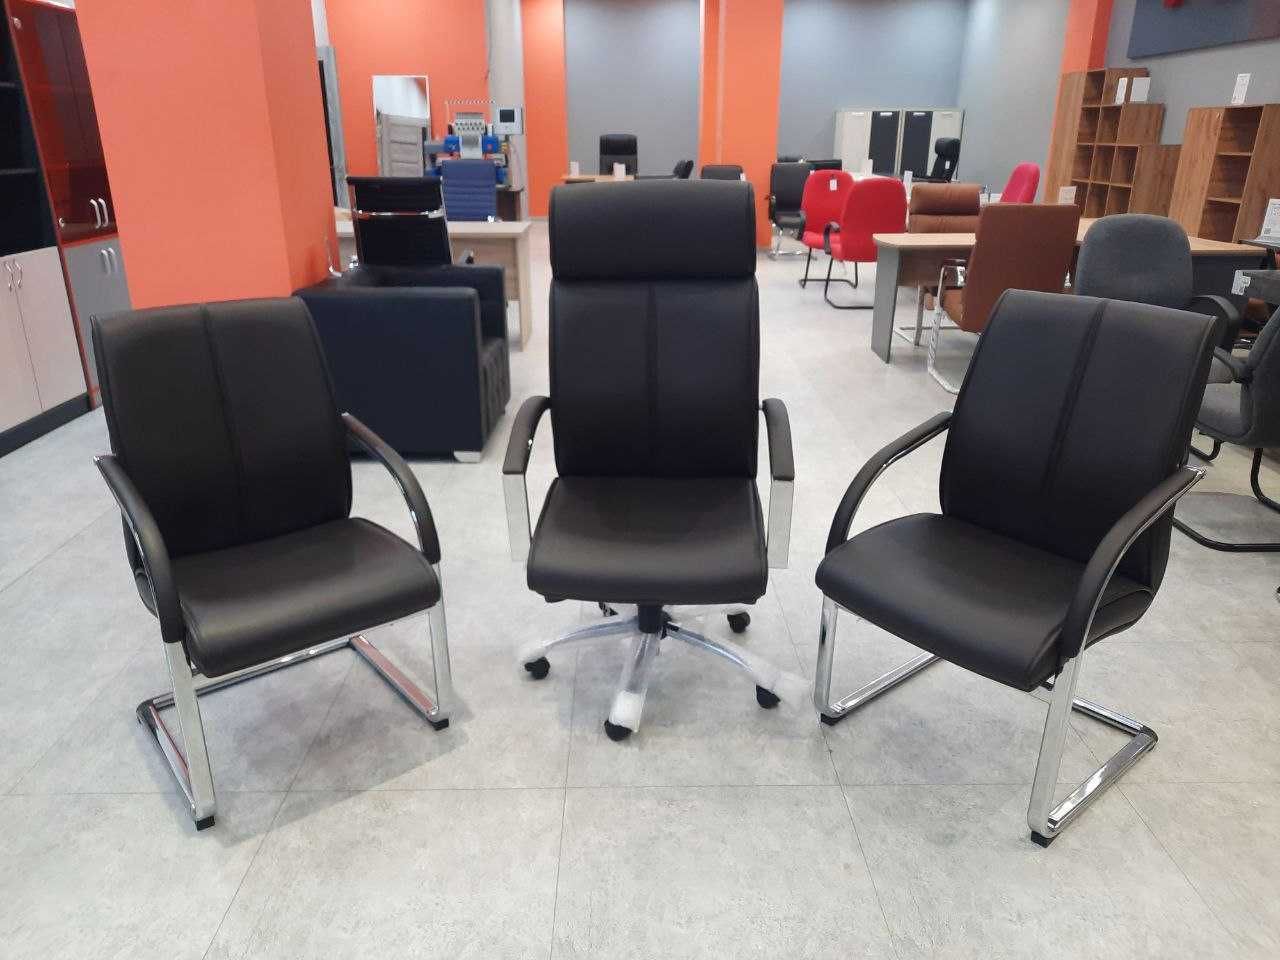 Офисное кресло  Comodo бесплатная  доставка, гарантия, оригинал!